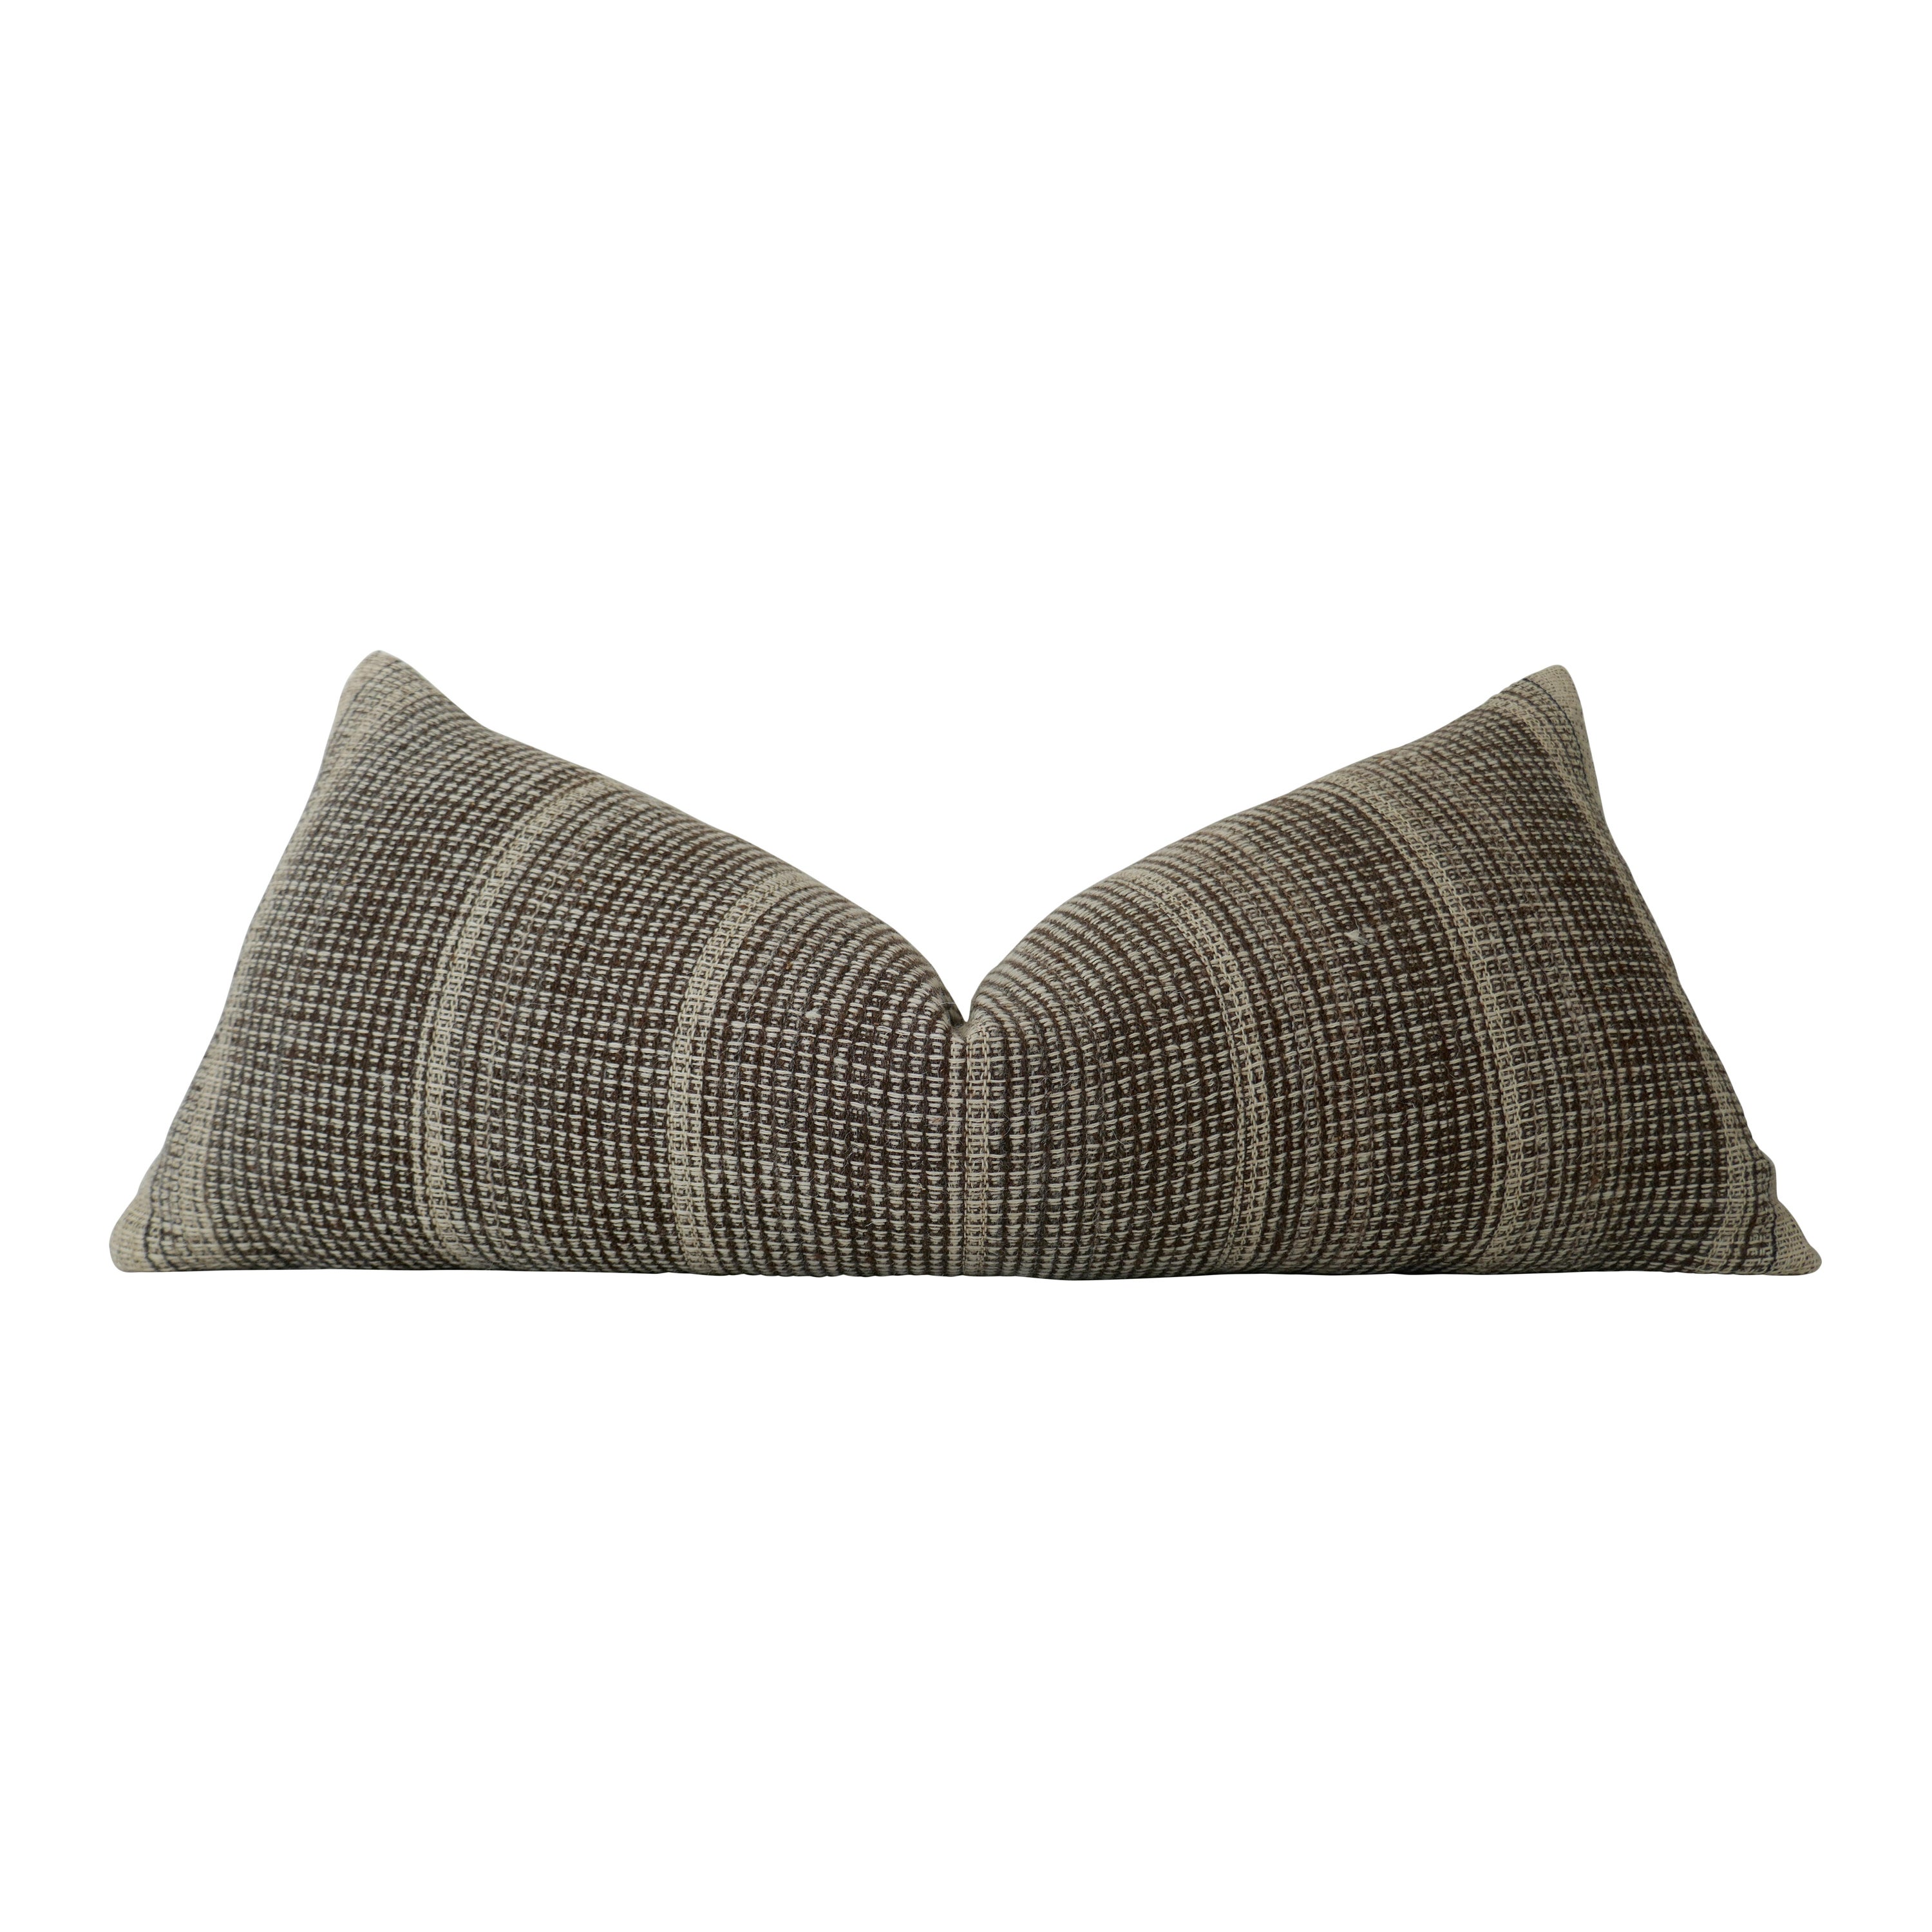 FI Handgesponnene Wolle Stripe Large Body Pillow